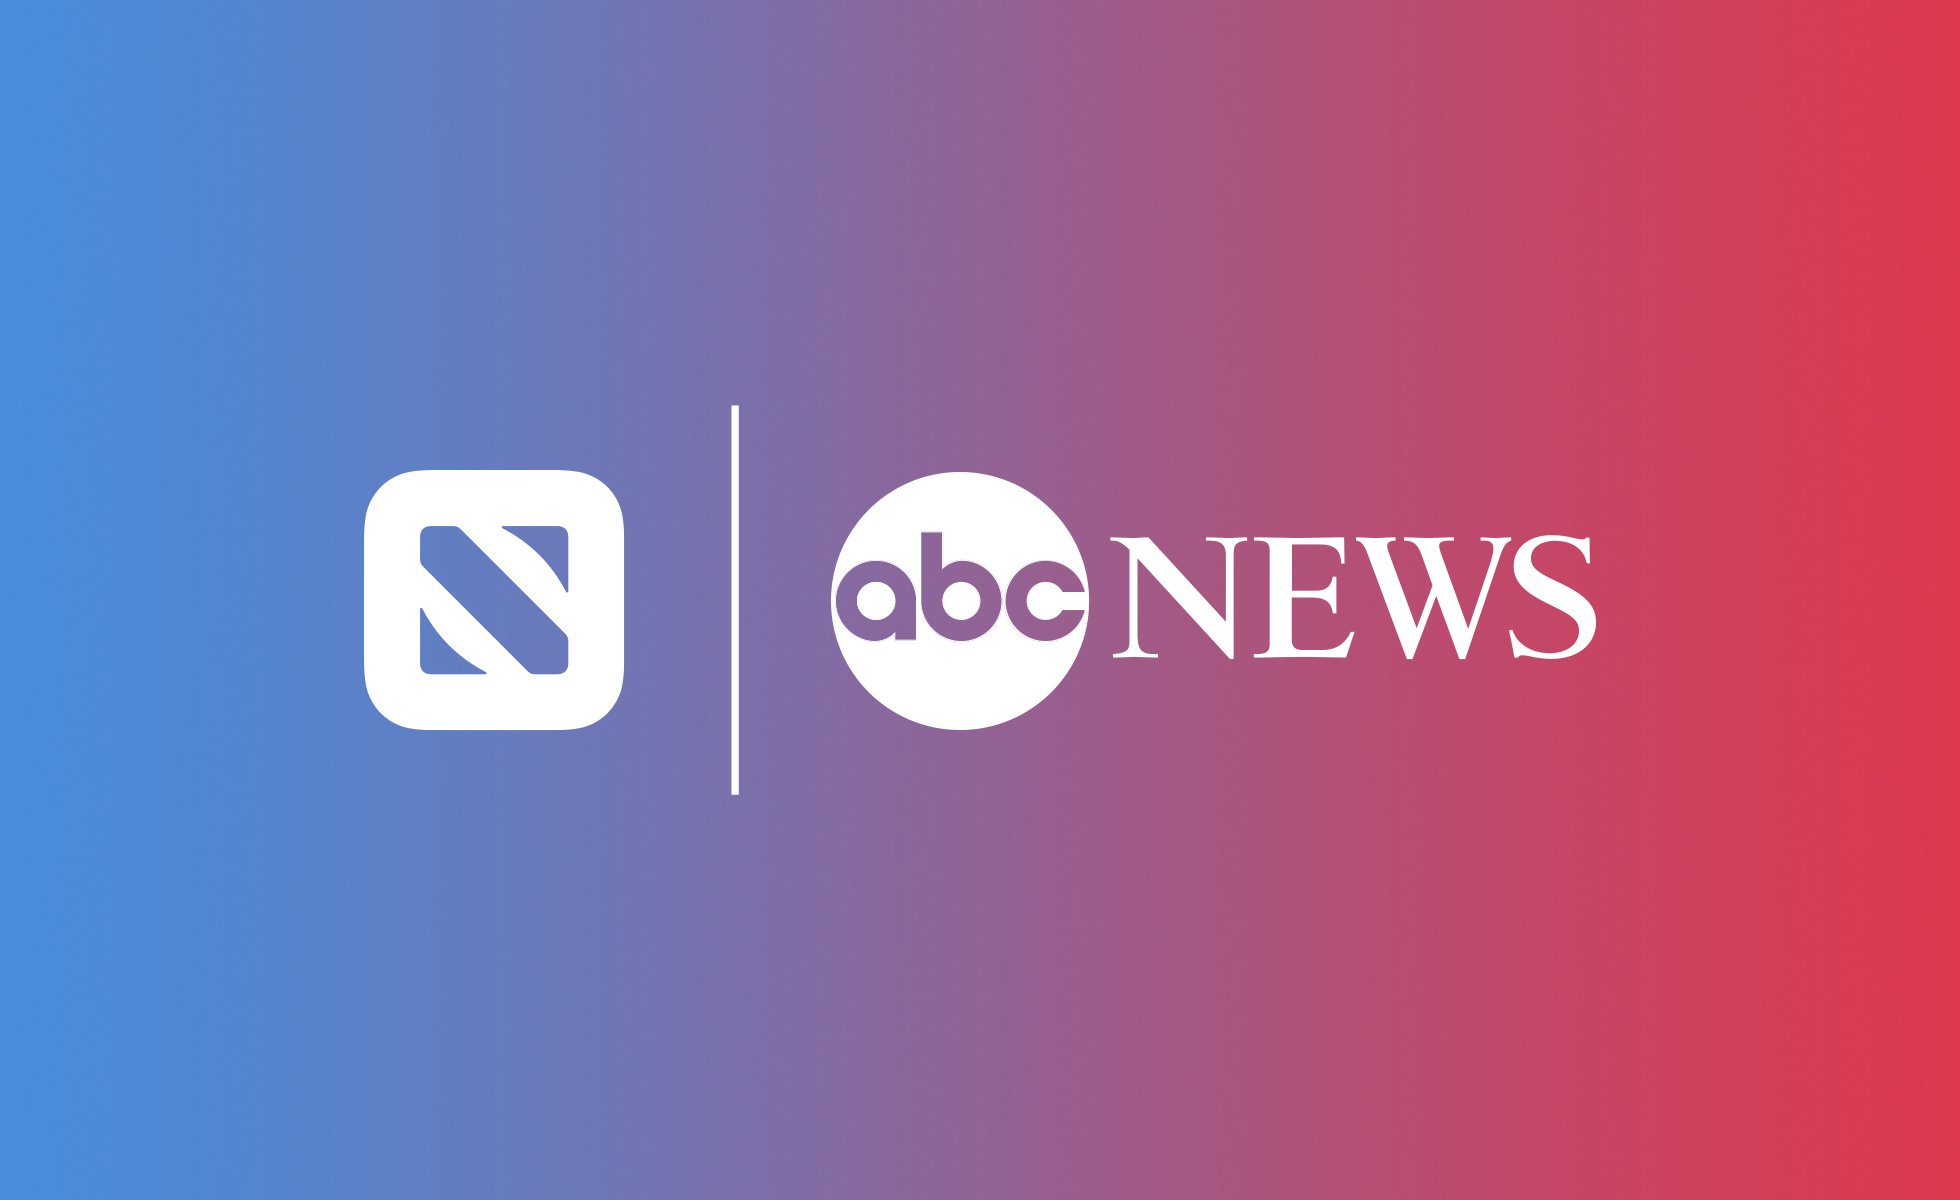 Apple news and ABC NEws